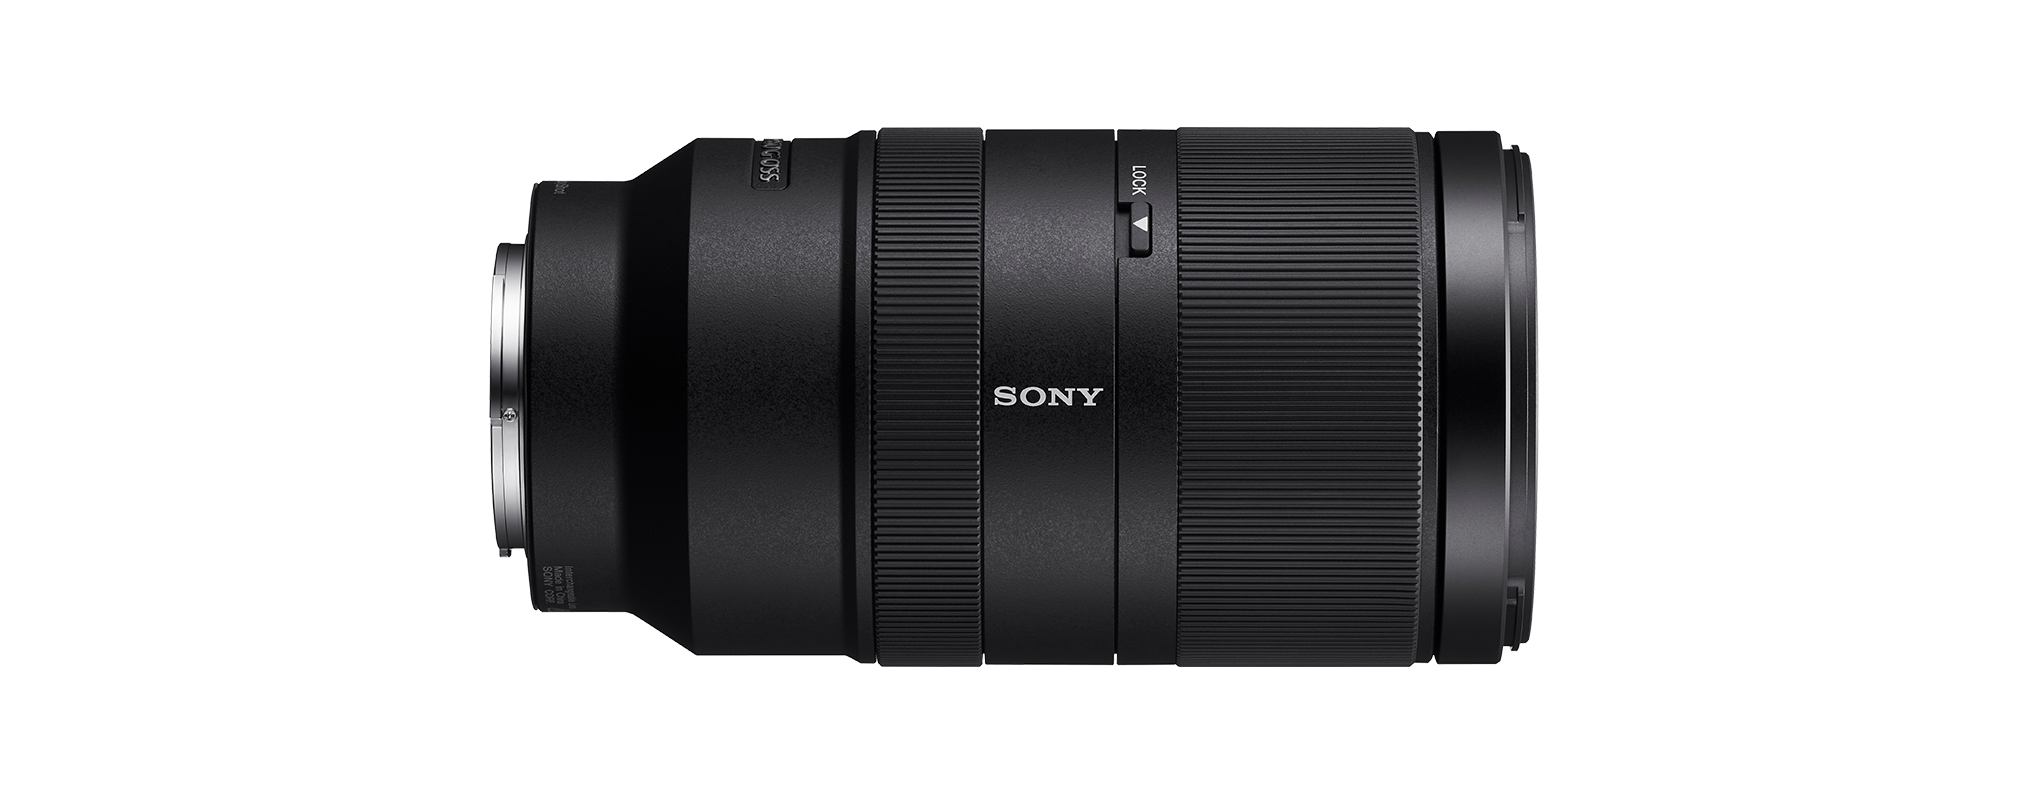 SONY SEL70350G 70 mm ASPH, - ED, Sony (Objektiv mm FHB, Schwarz) OSS, 350 f/4.5-6.3 G-Lens, Circulare Blende, DMR E-Mount, für